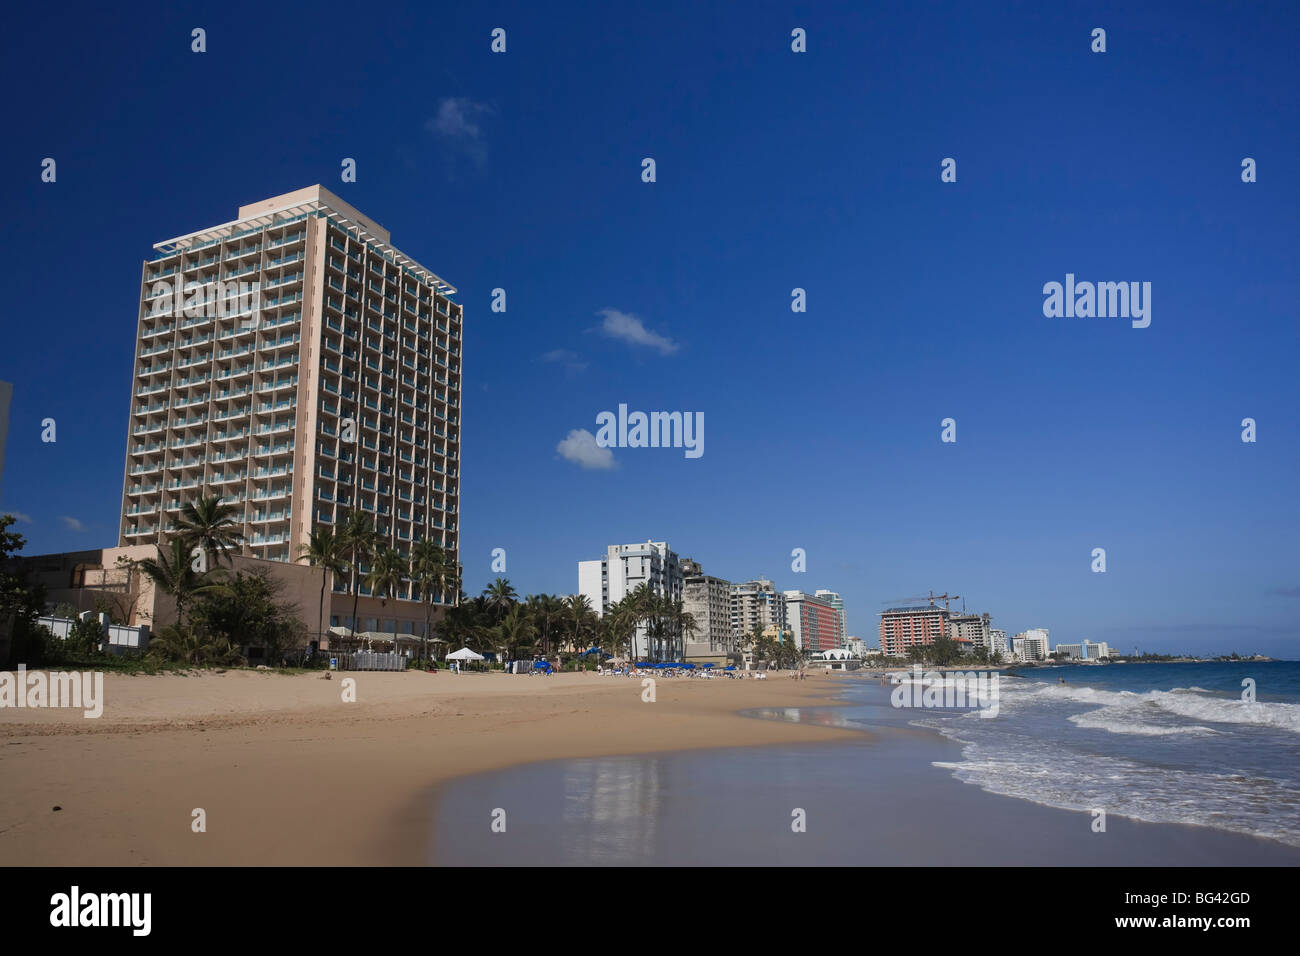 Puerto Rico, San Juan, Condado Beach Stock Photo